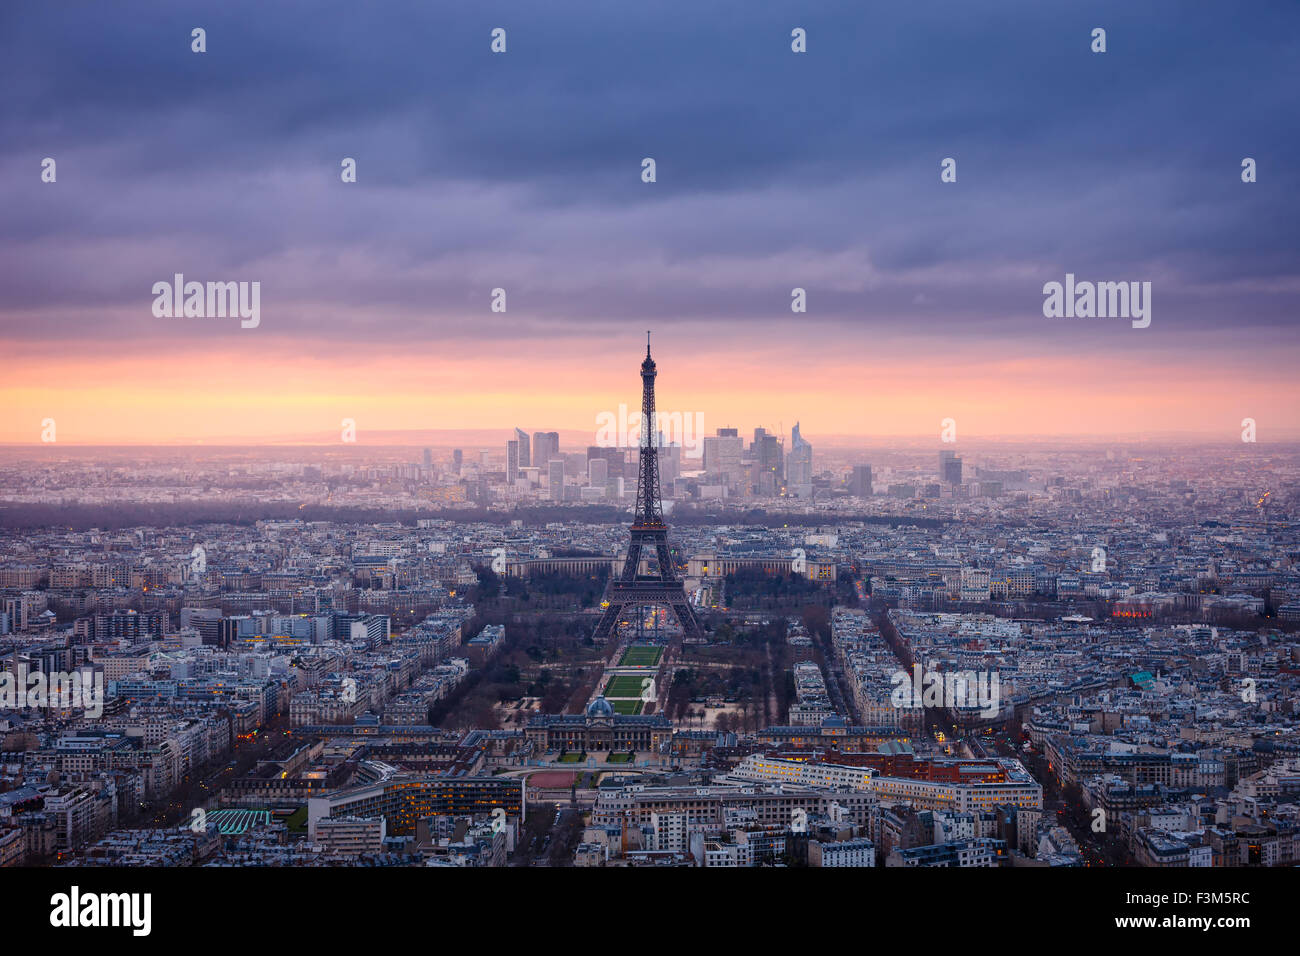 Paris-Stadt in der Abenddämmerung in rosa gekleidet. Luftaufnahme von Paris und den Eiffelturm, Champ de Mars, Trocadero und La Defense Stockfoto